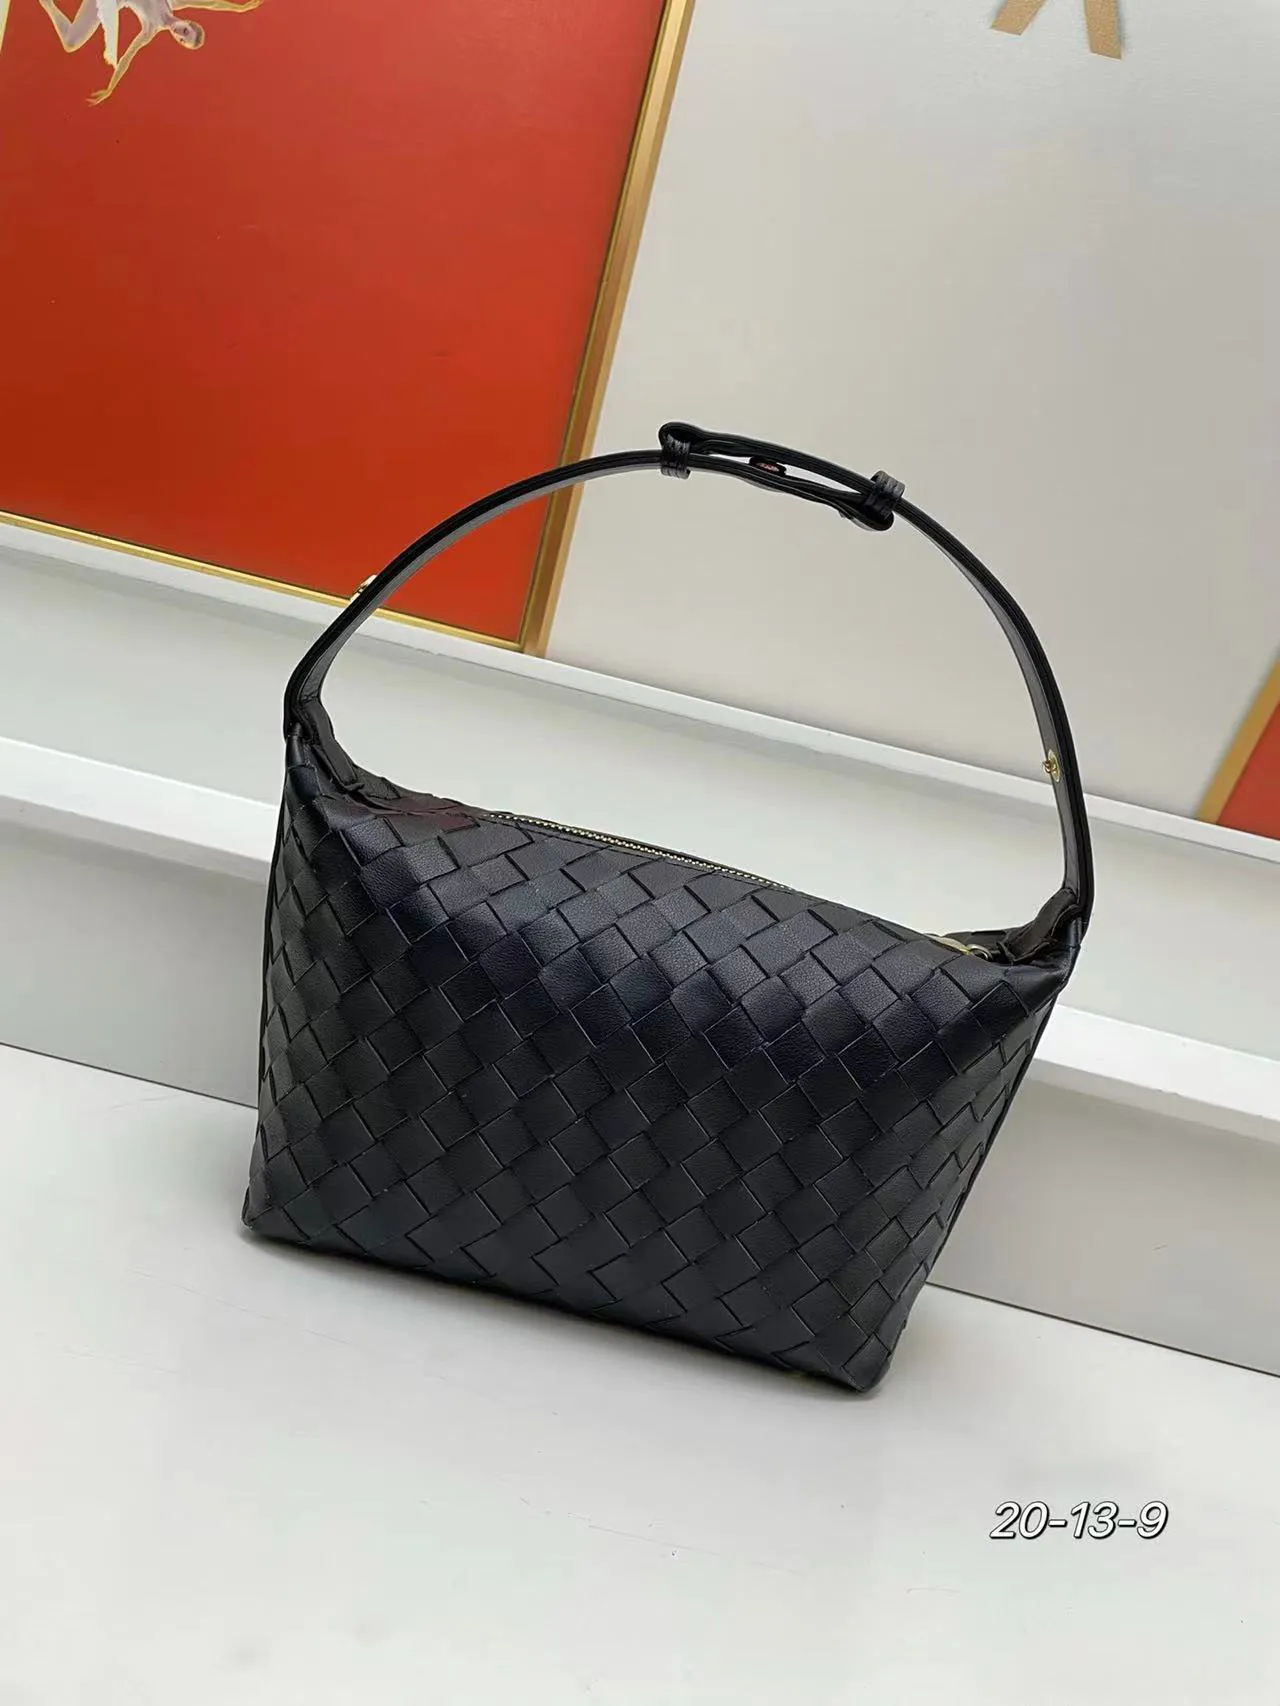 أعلى مقبض حقيبة أوفيديا الفخامة الجديدة الإبطية الجديدة يدها handbag668canvas جلدية حقيقية للنساء مينز مصمم مصمم قابض قابض الكتف أكياس أزياء الكتف